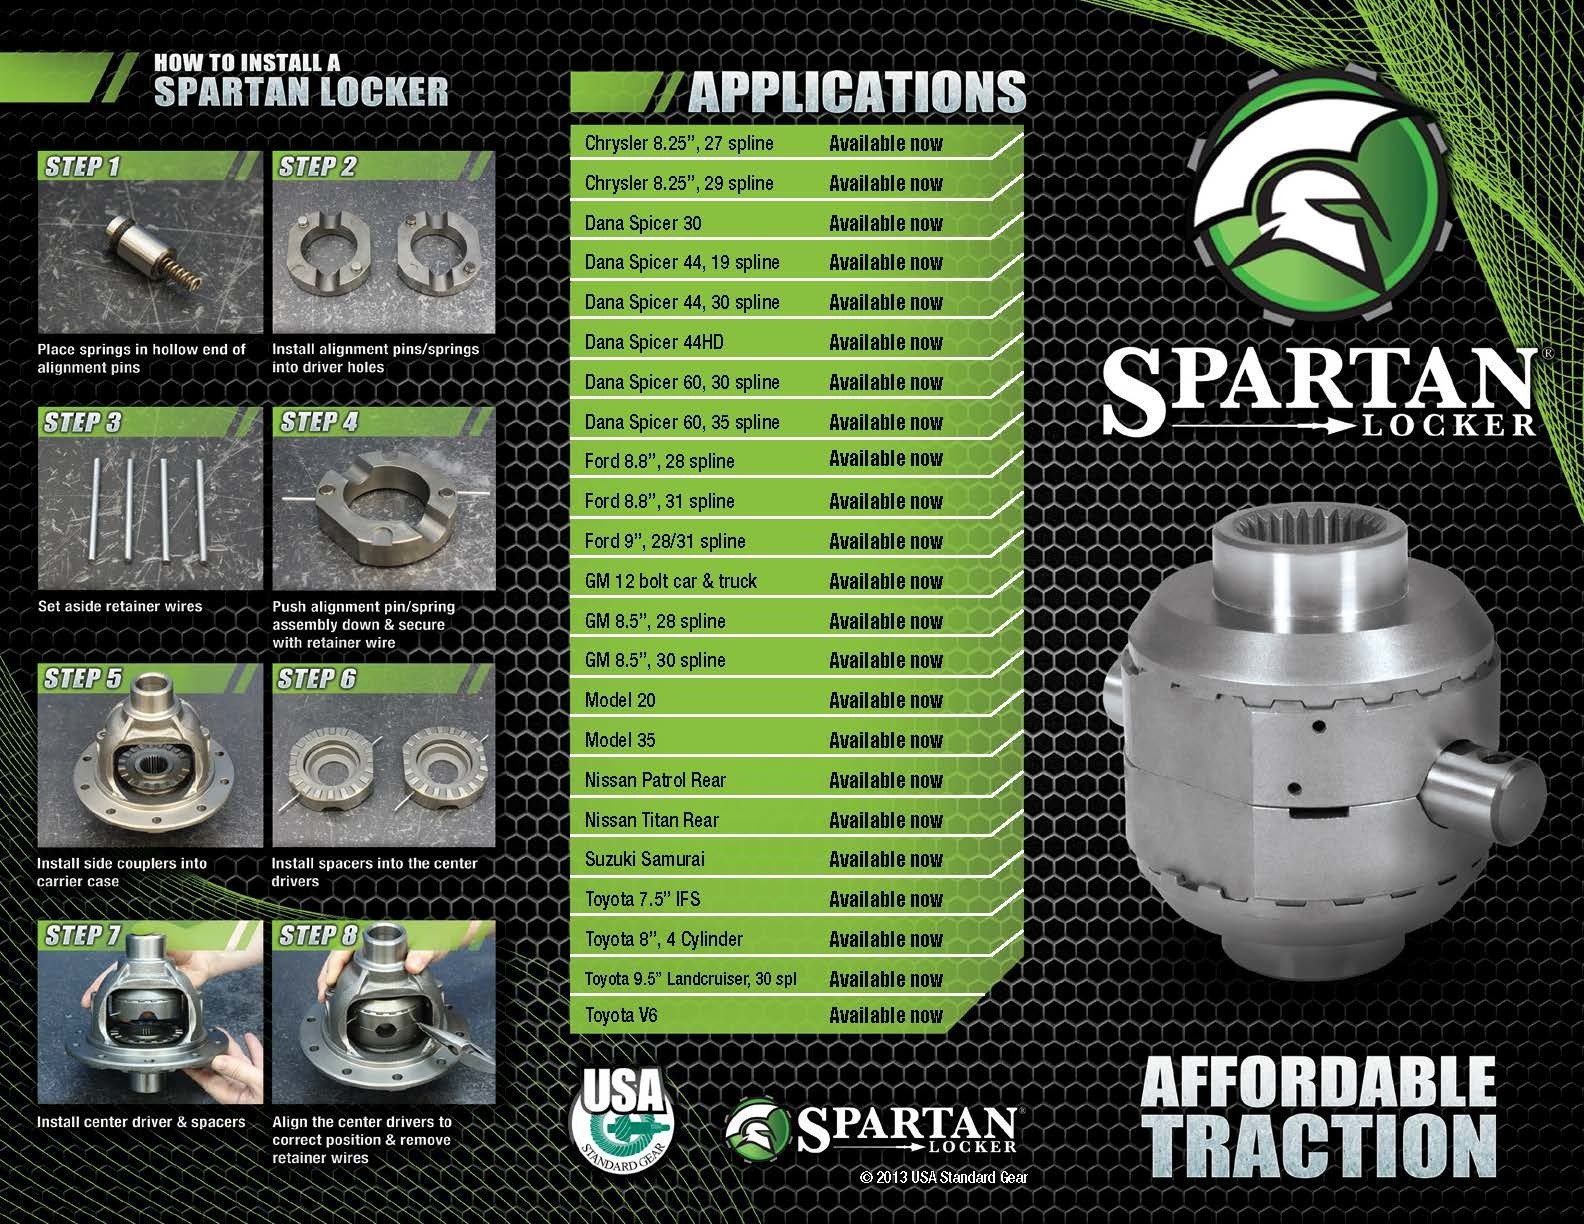 Spartan Locker for M20, 29 spline axles, includes heavy-duty cross pin shaft